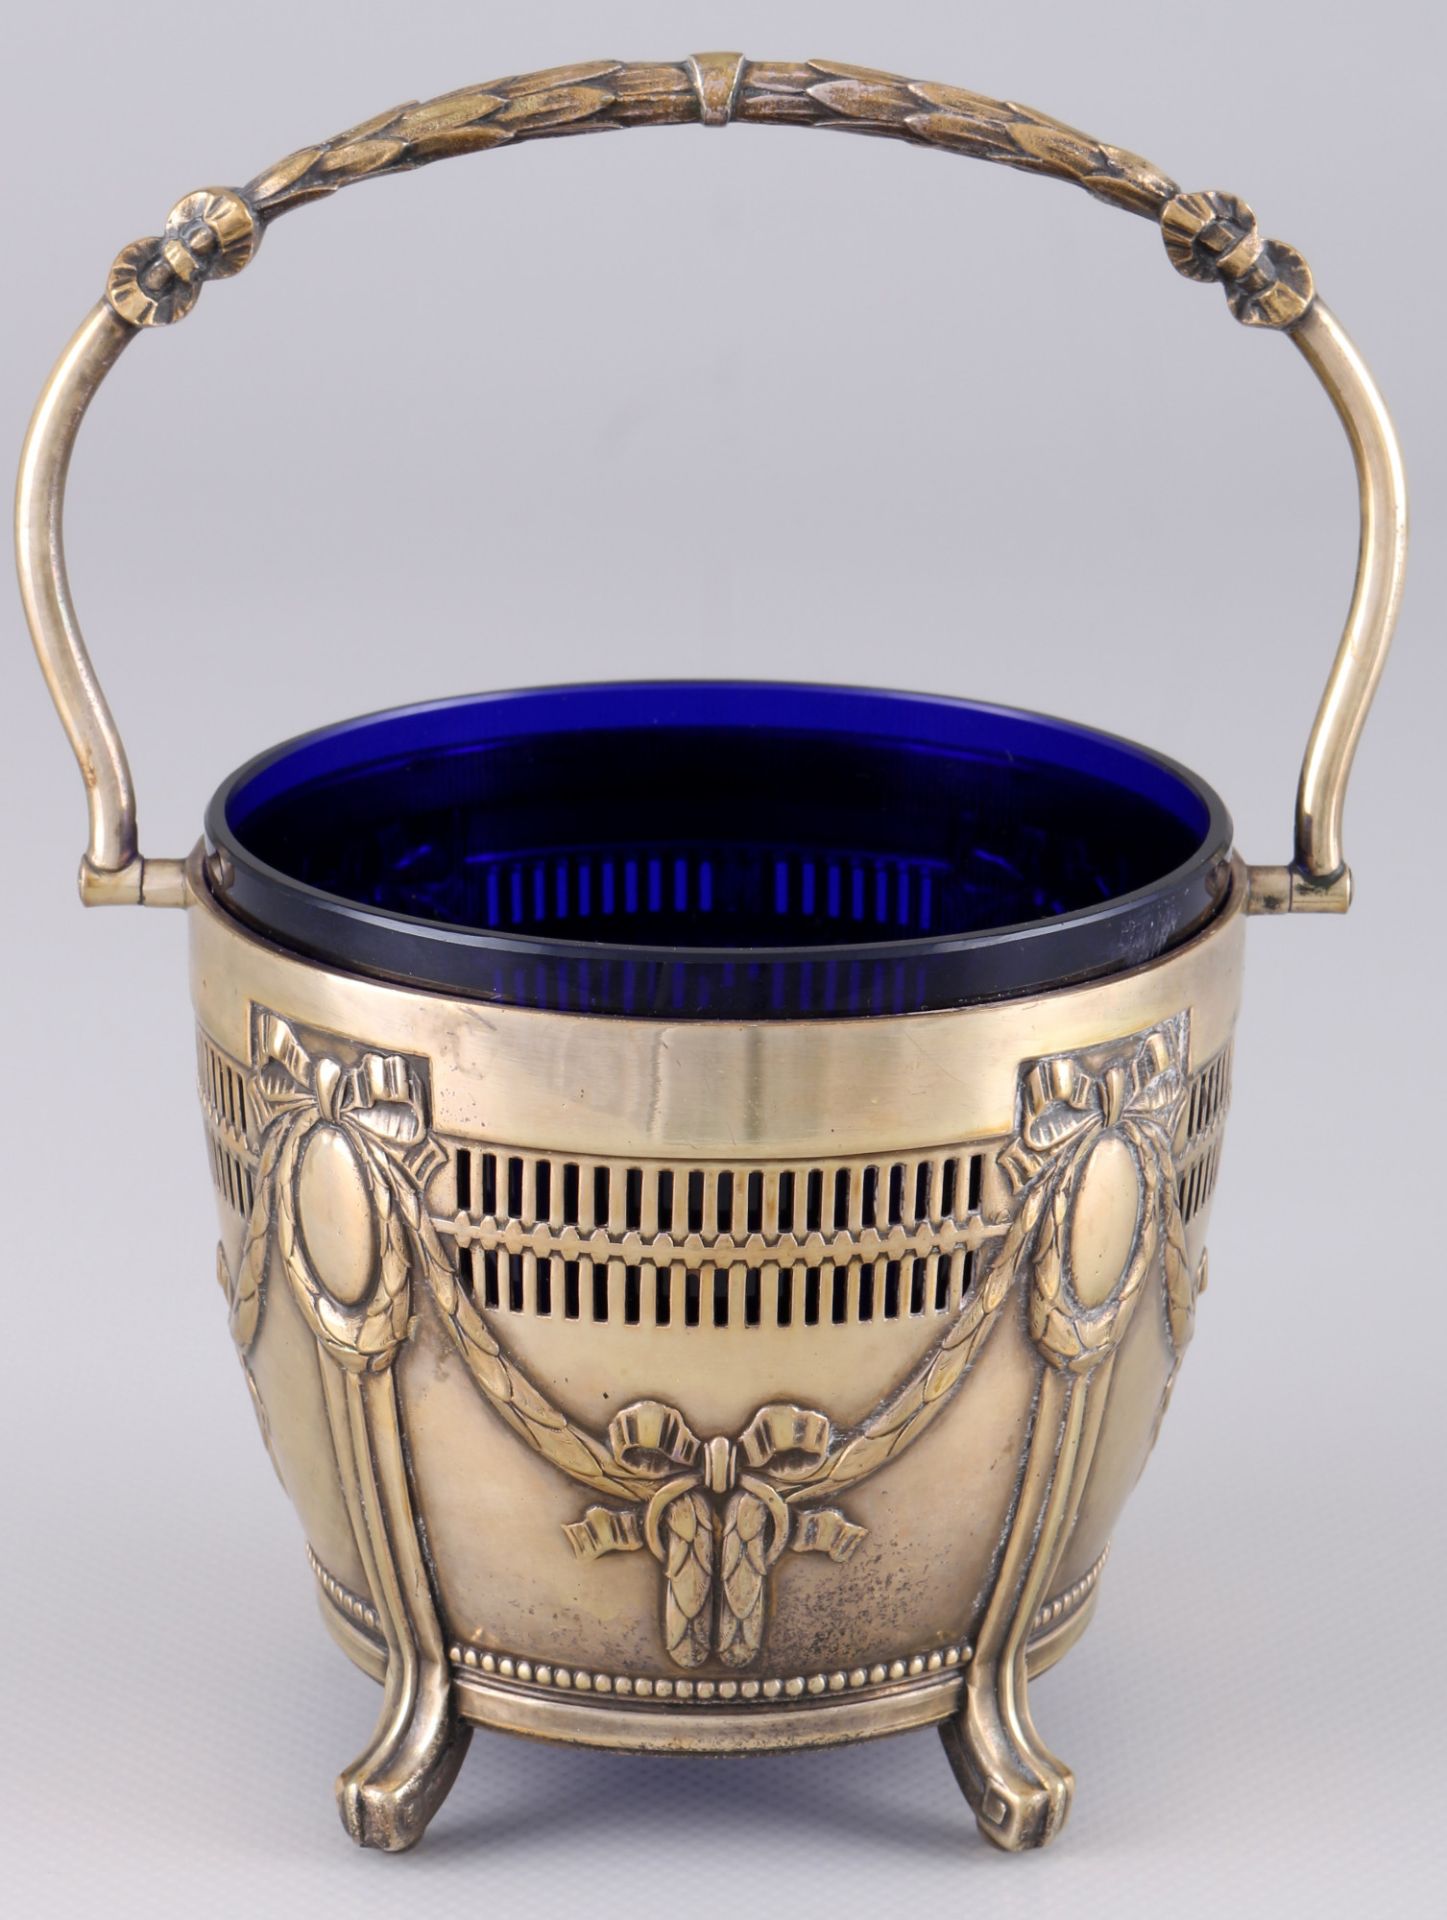 Friedrich Lodholz 800 Silber Zuckerschale mit kobaltblauem Glaseinsatz, silver sugar bowl with royal